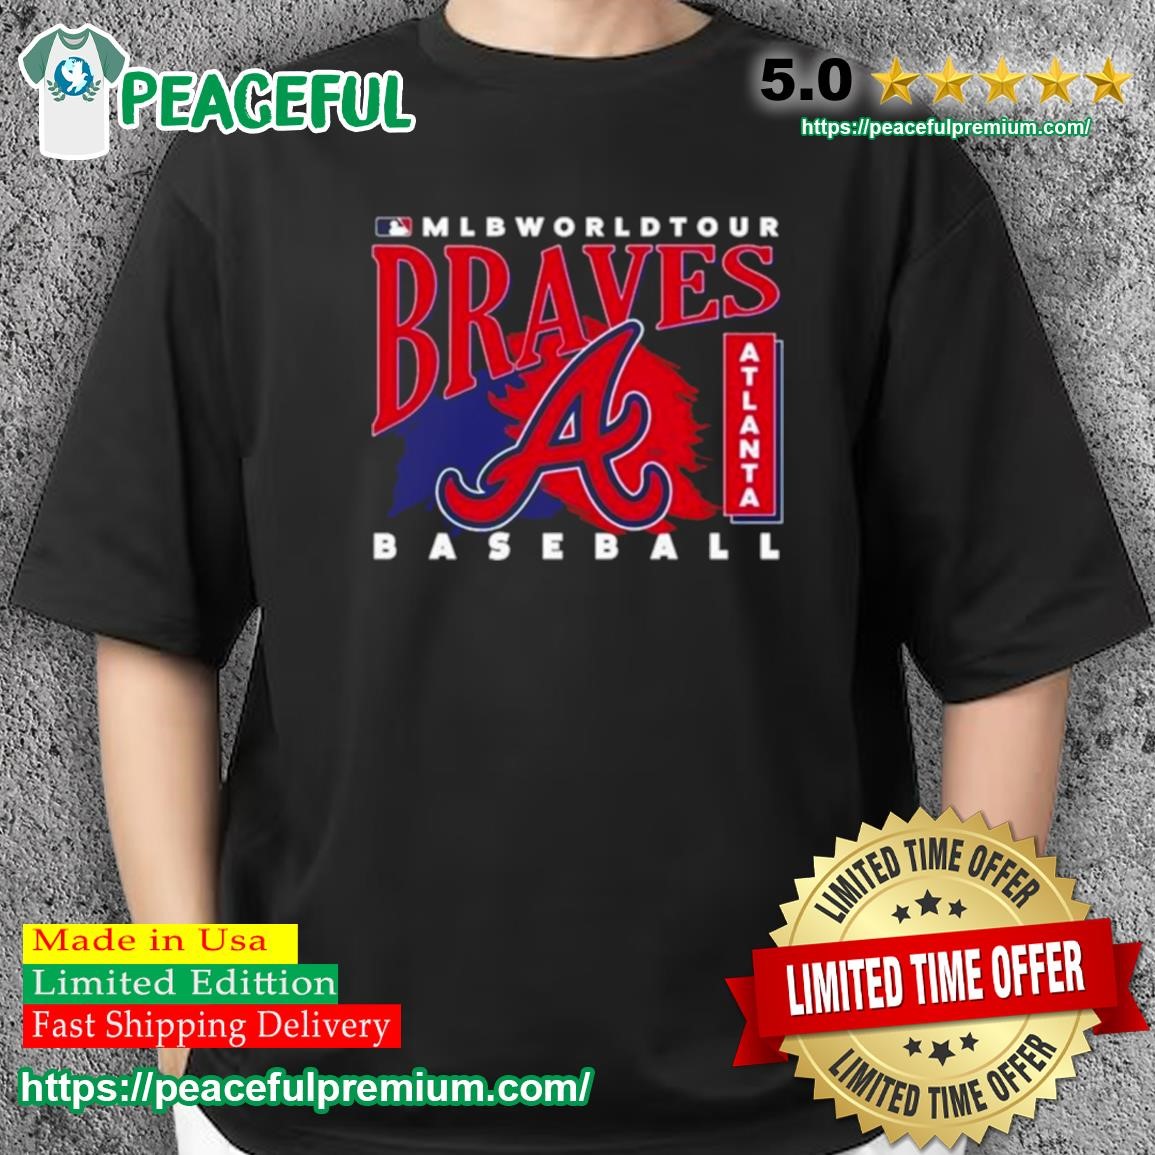 Atlanta Braves major league baseball 2023 logo shirt, hoodie